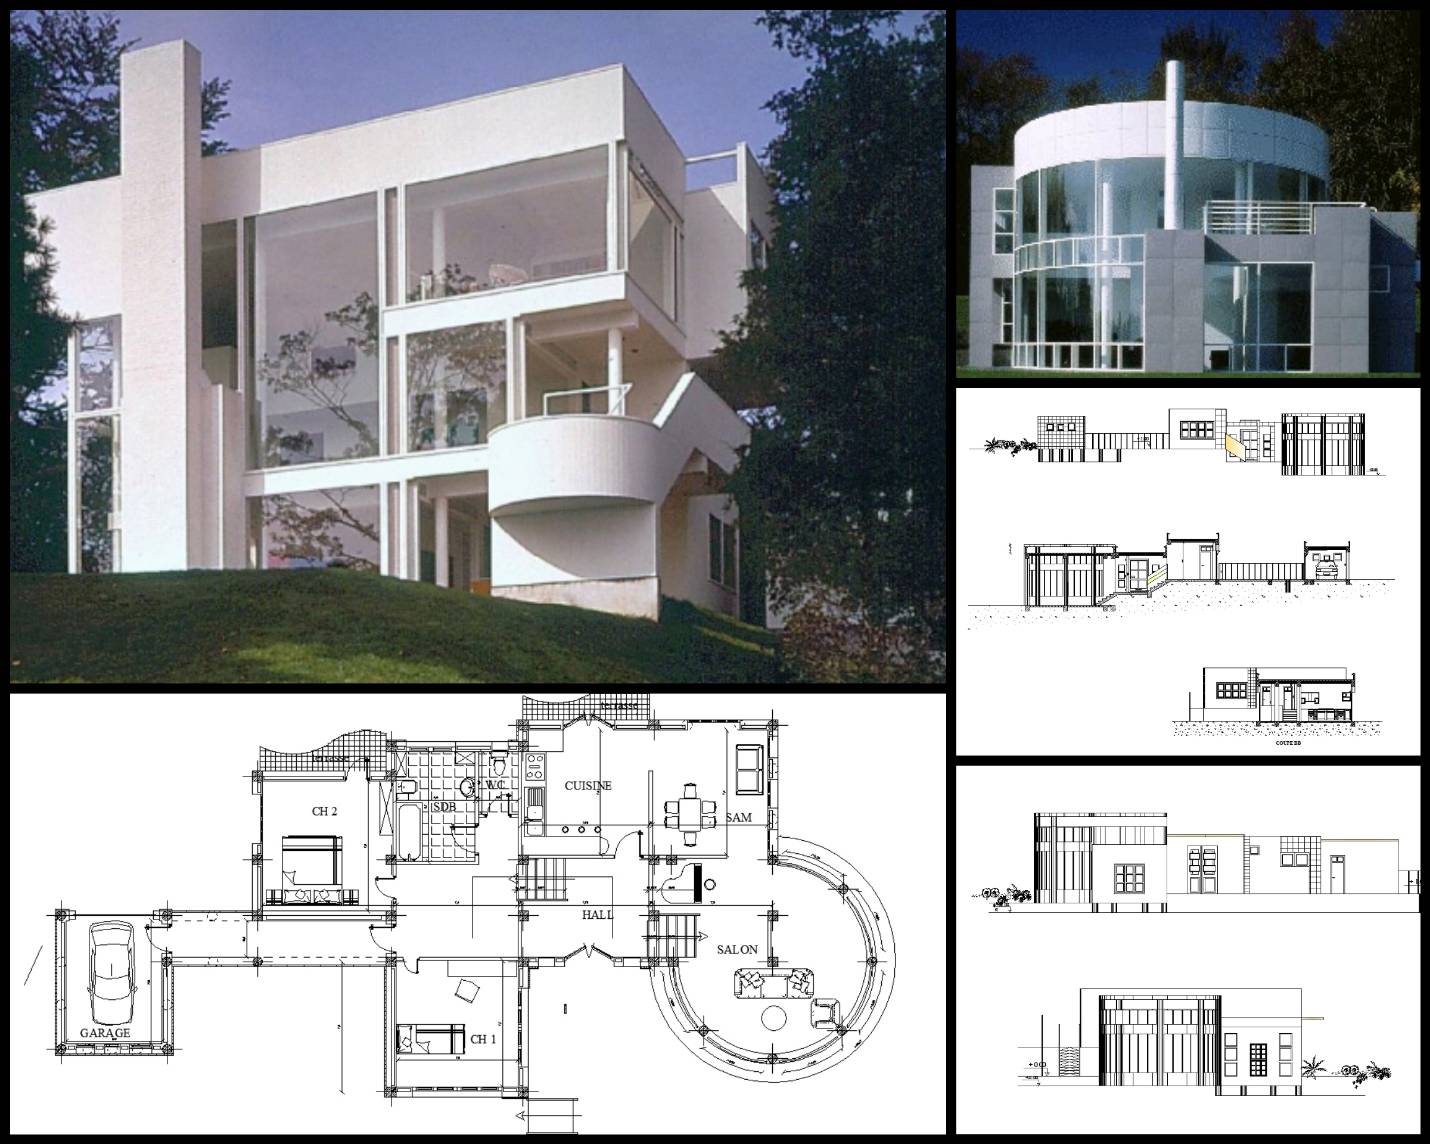 【世界知名建築案例研究CAD設計施工圖】Villa inspired from Richard Meier's house 理查德·邁耶 別墅設計